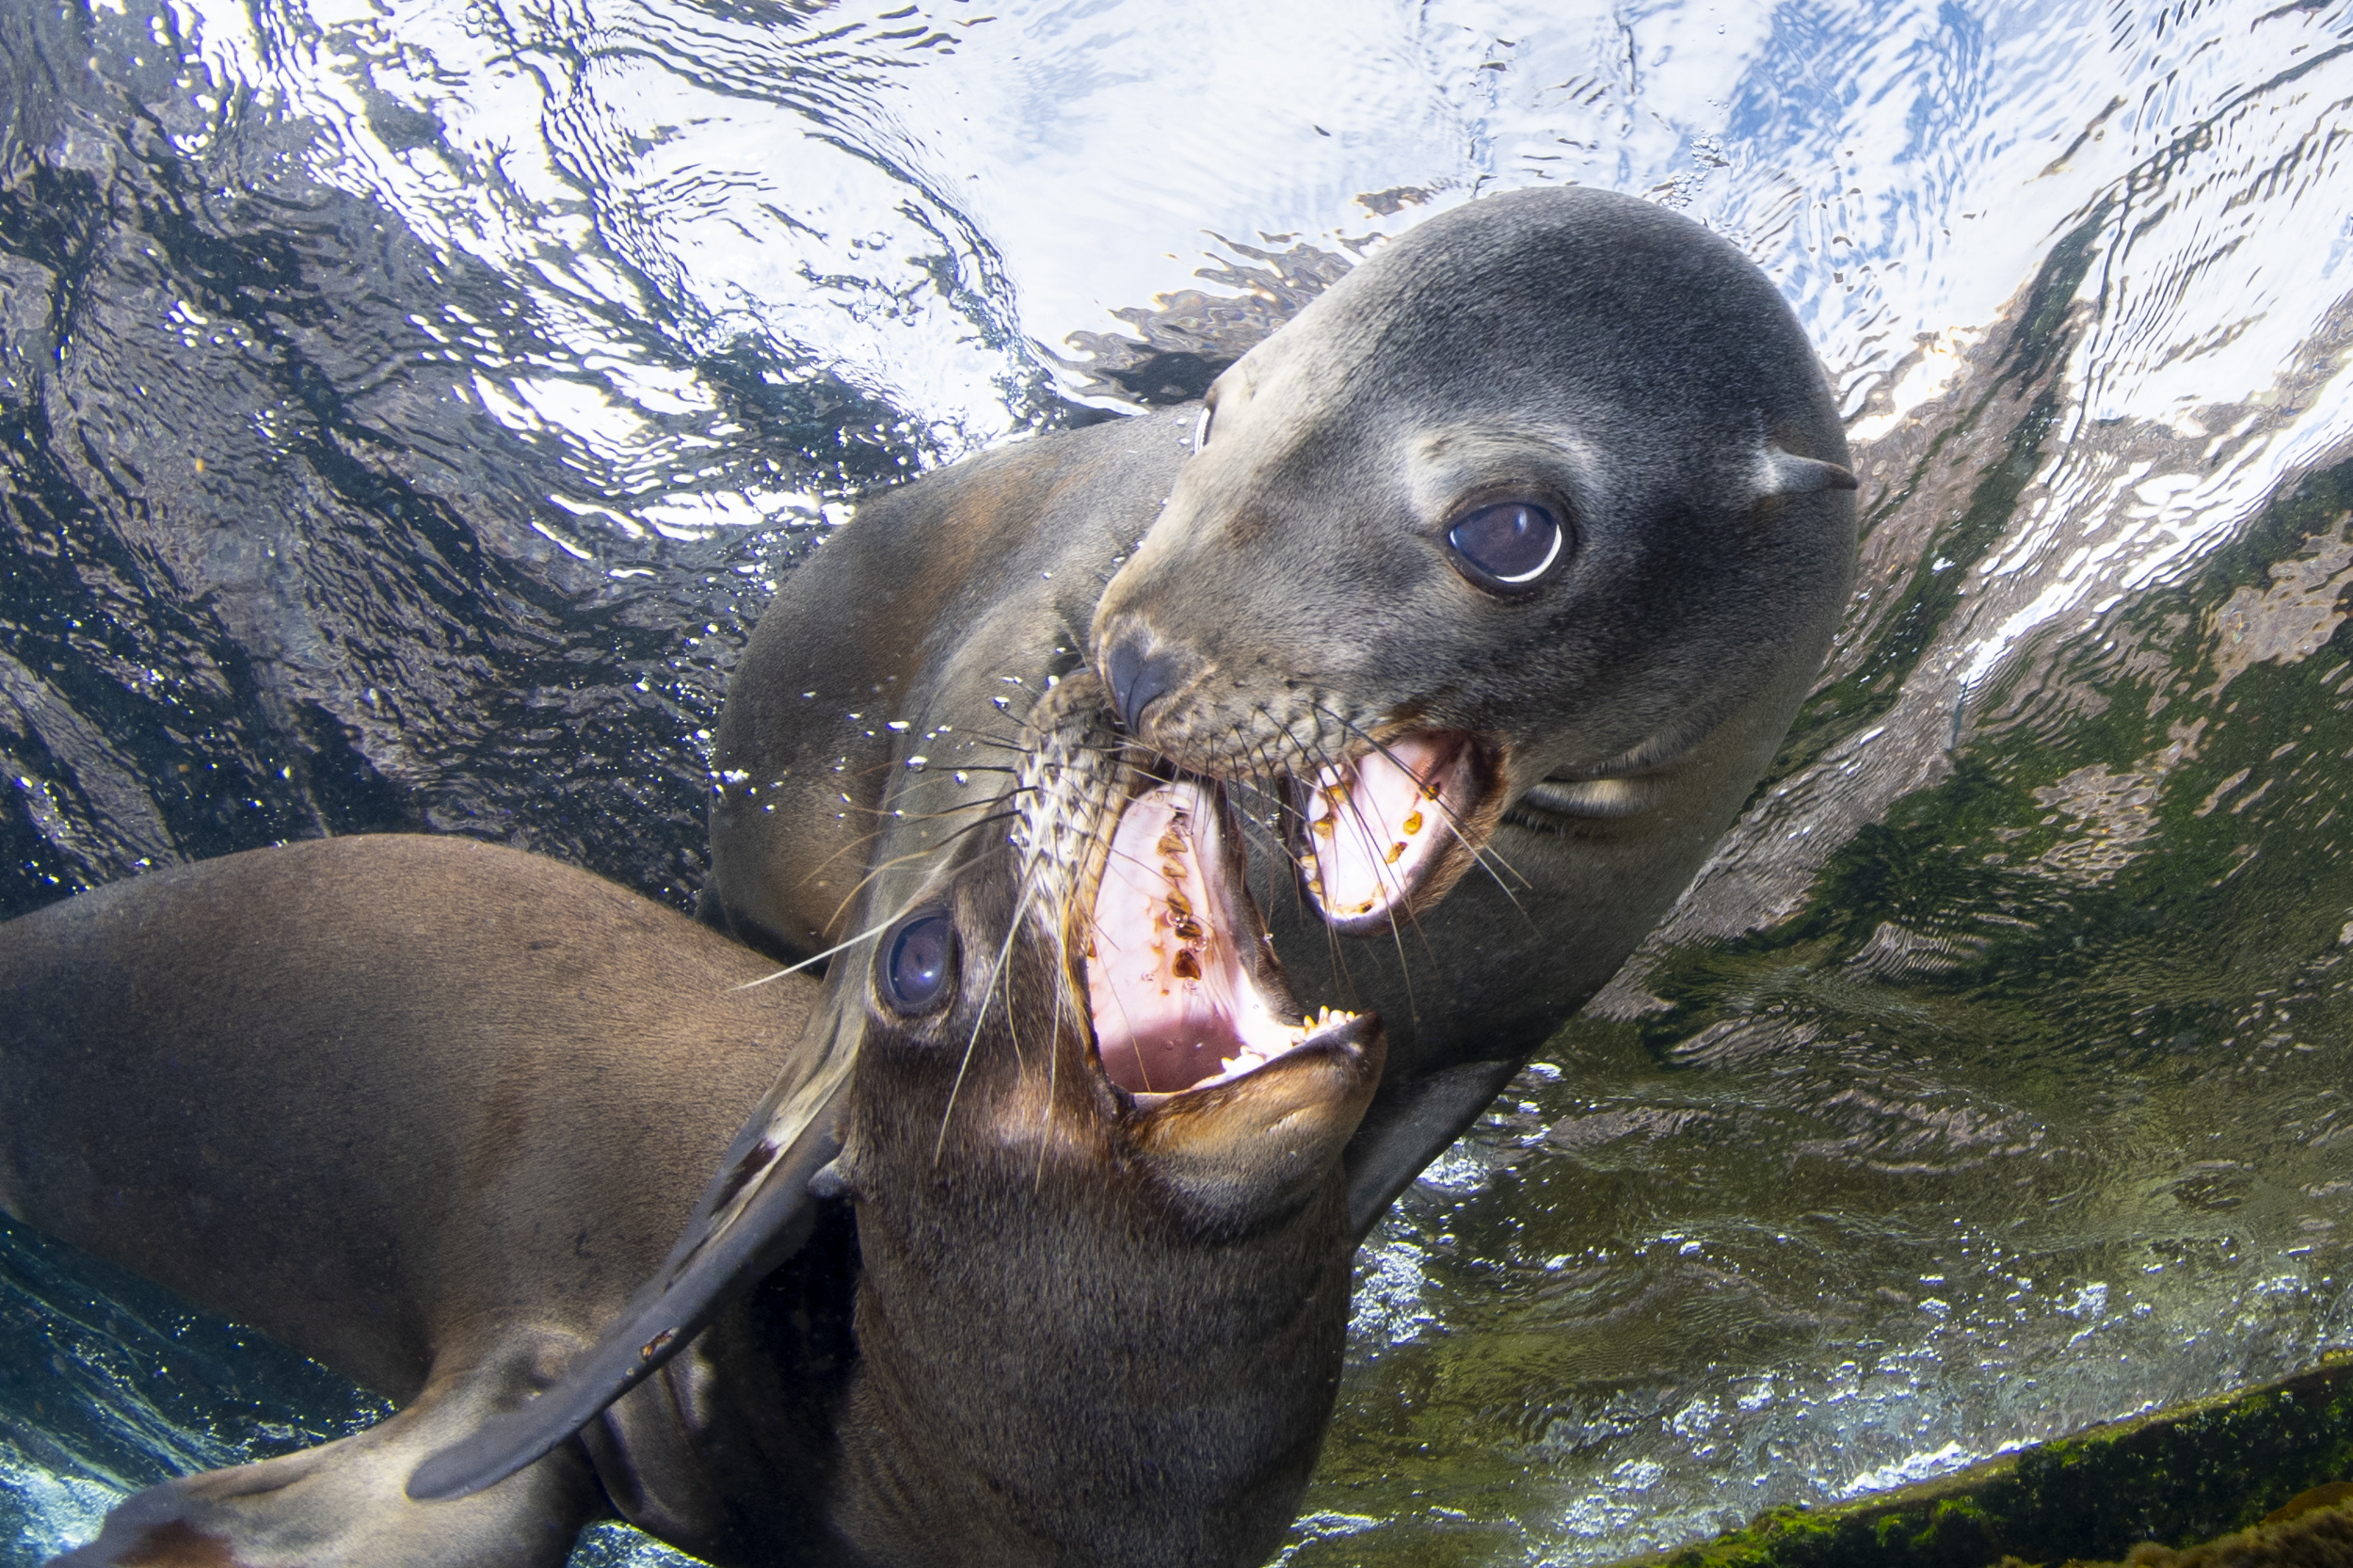 Sea lions, Coronado Islands, Mexico. Photo by Celia Kujala